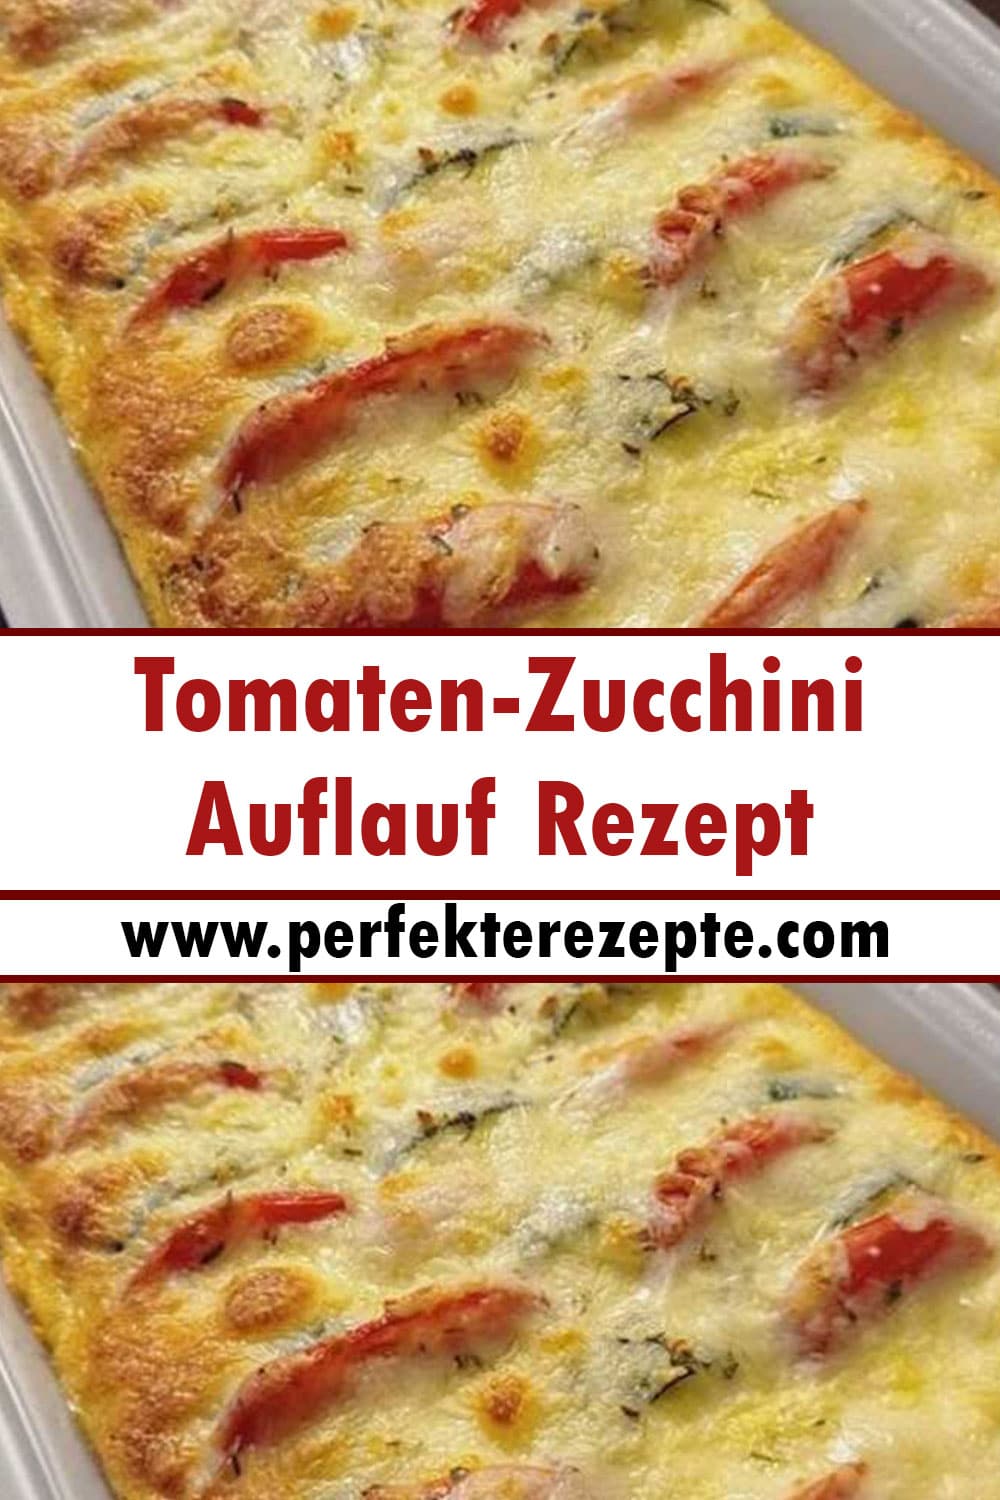 Tomaten-Zucchini-Auflauf Rezept - Schnelle und Einfache Rezepte